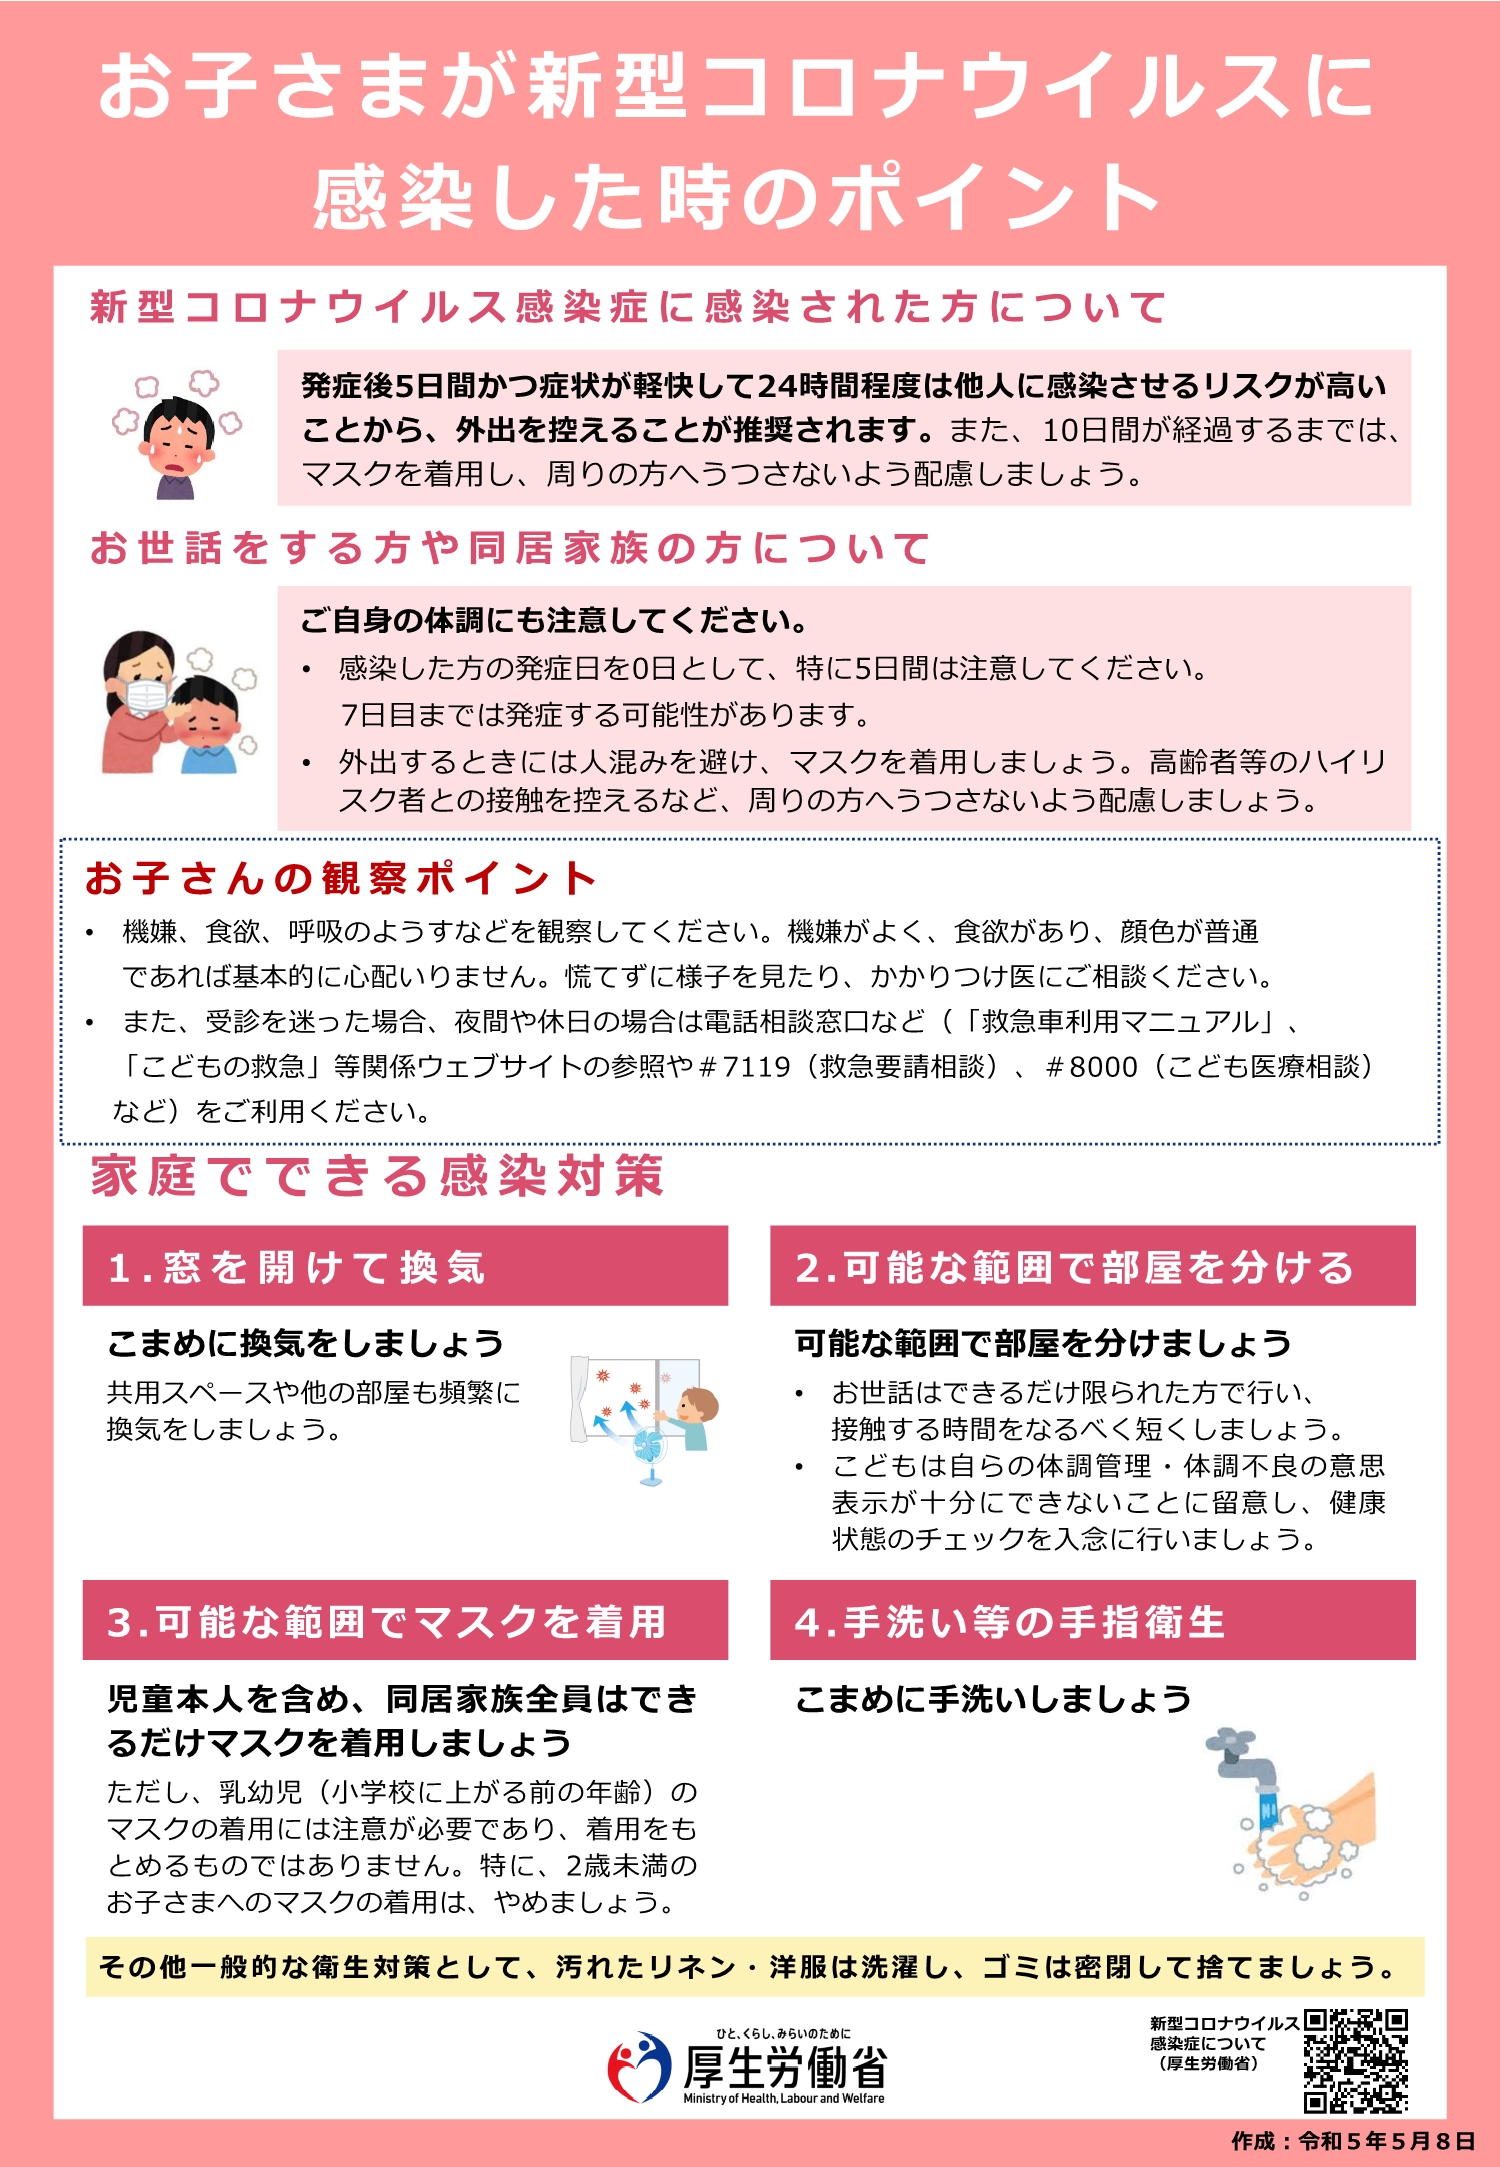 栃木県／新型コロナウイルス感染症における基本的な感染対策について